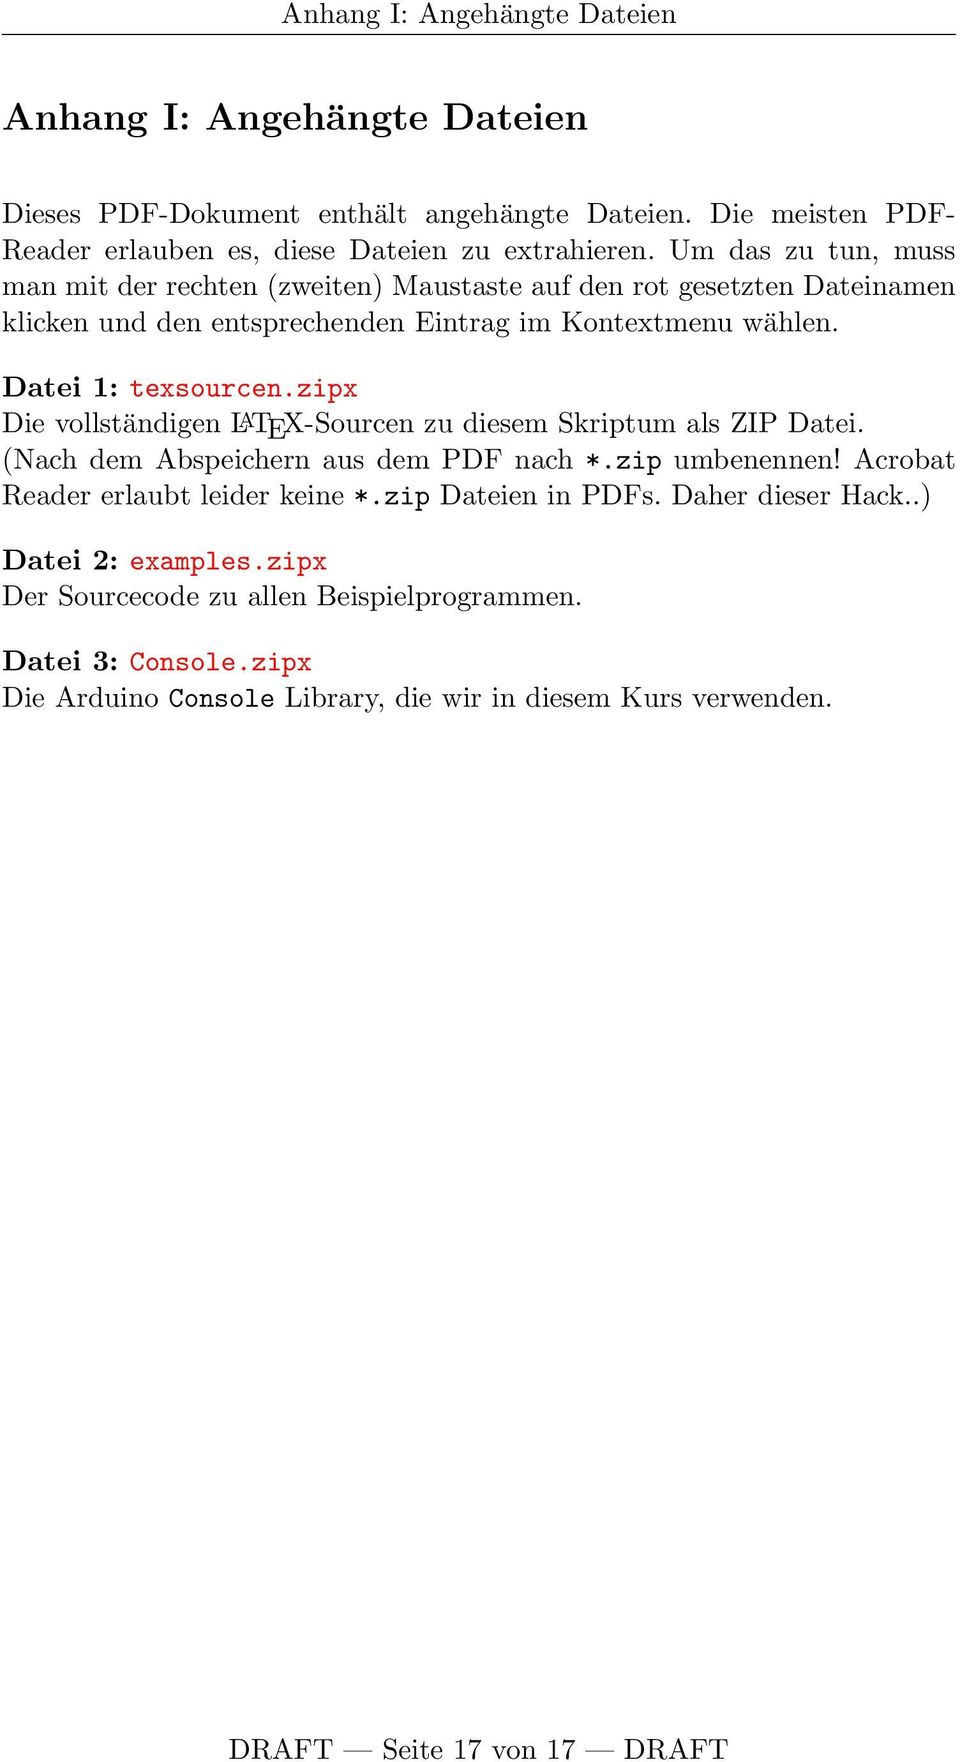 Datei 1: Die vollständigen L A TEX-Sourcen zu diesem Skriptum als ZIP Datei. (Nach dem Abspeichern aus dem PDF nach *.zip umbenennen! Acrobat Reader erlaubt leider keine *.